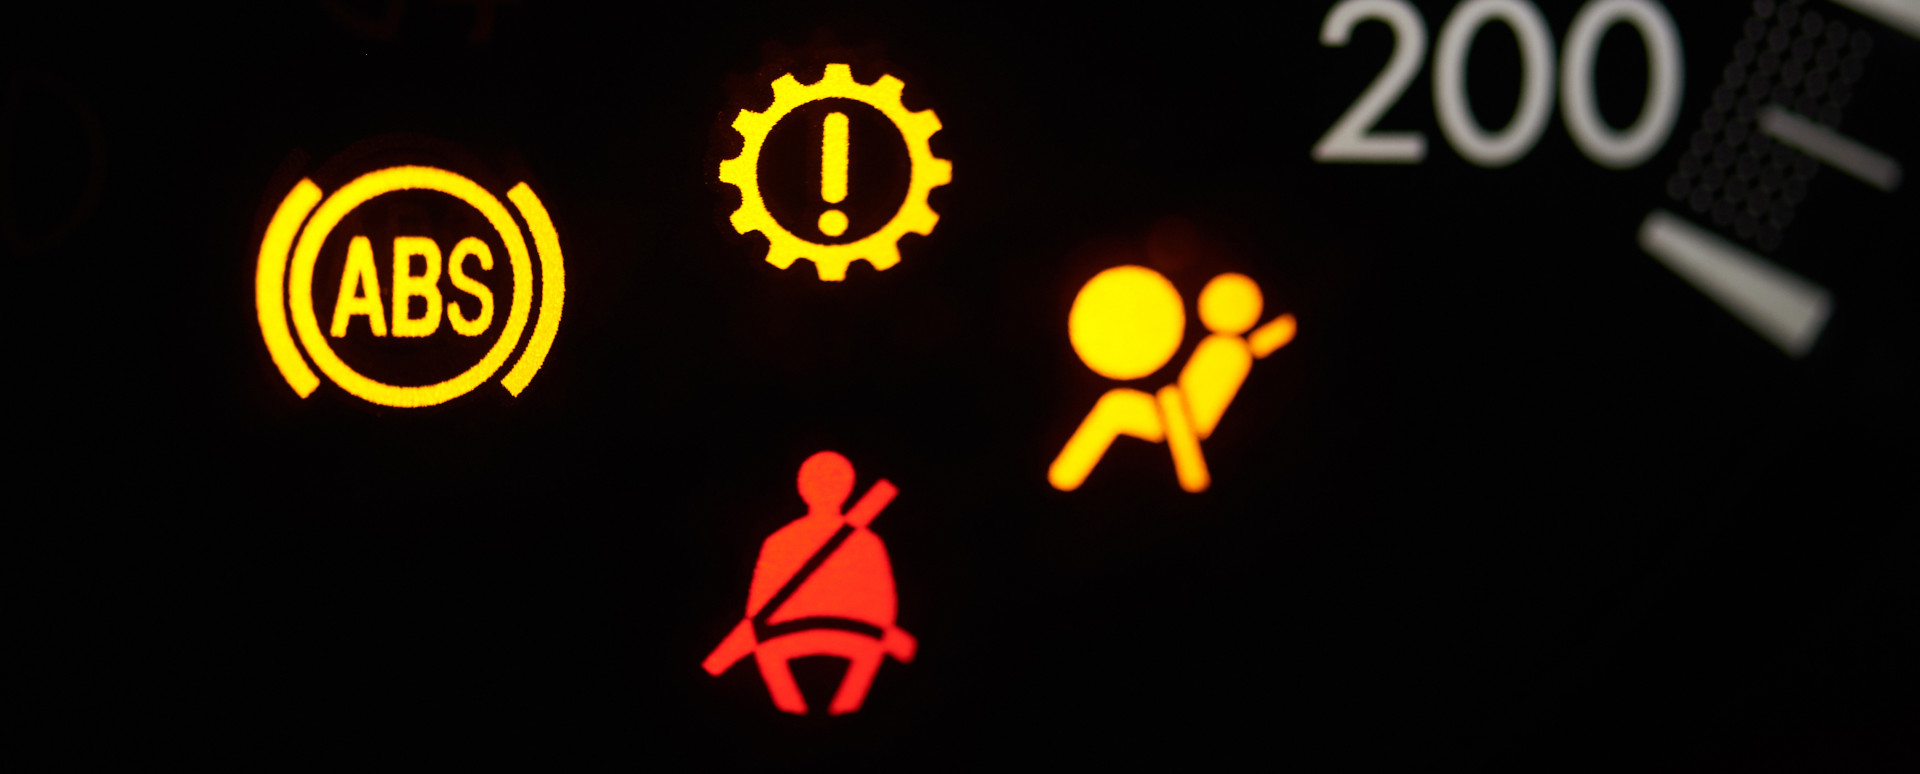 DriveSafe: Car Warning Explained